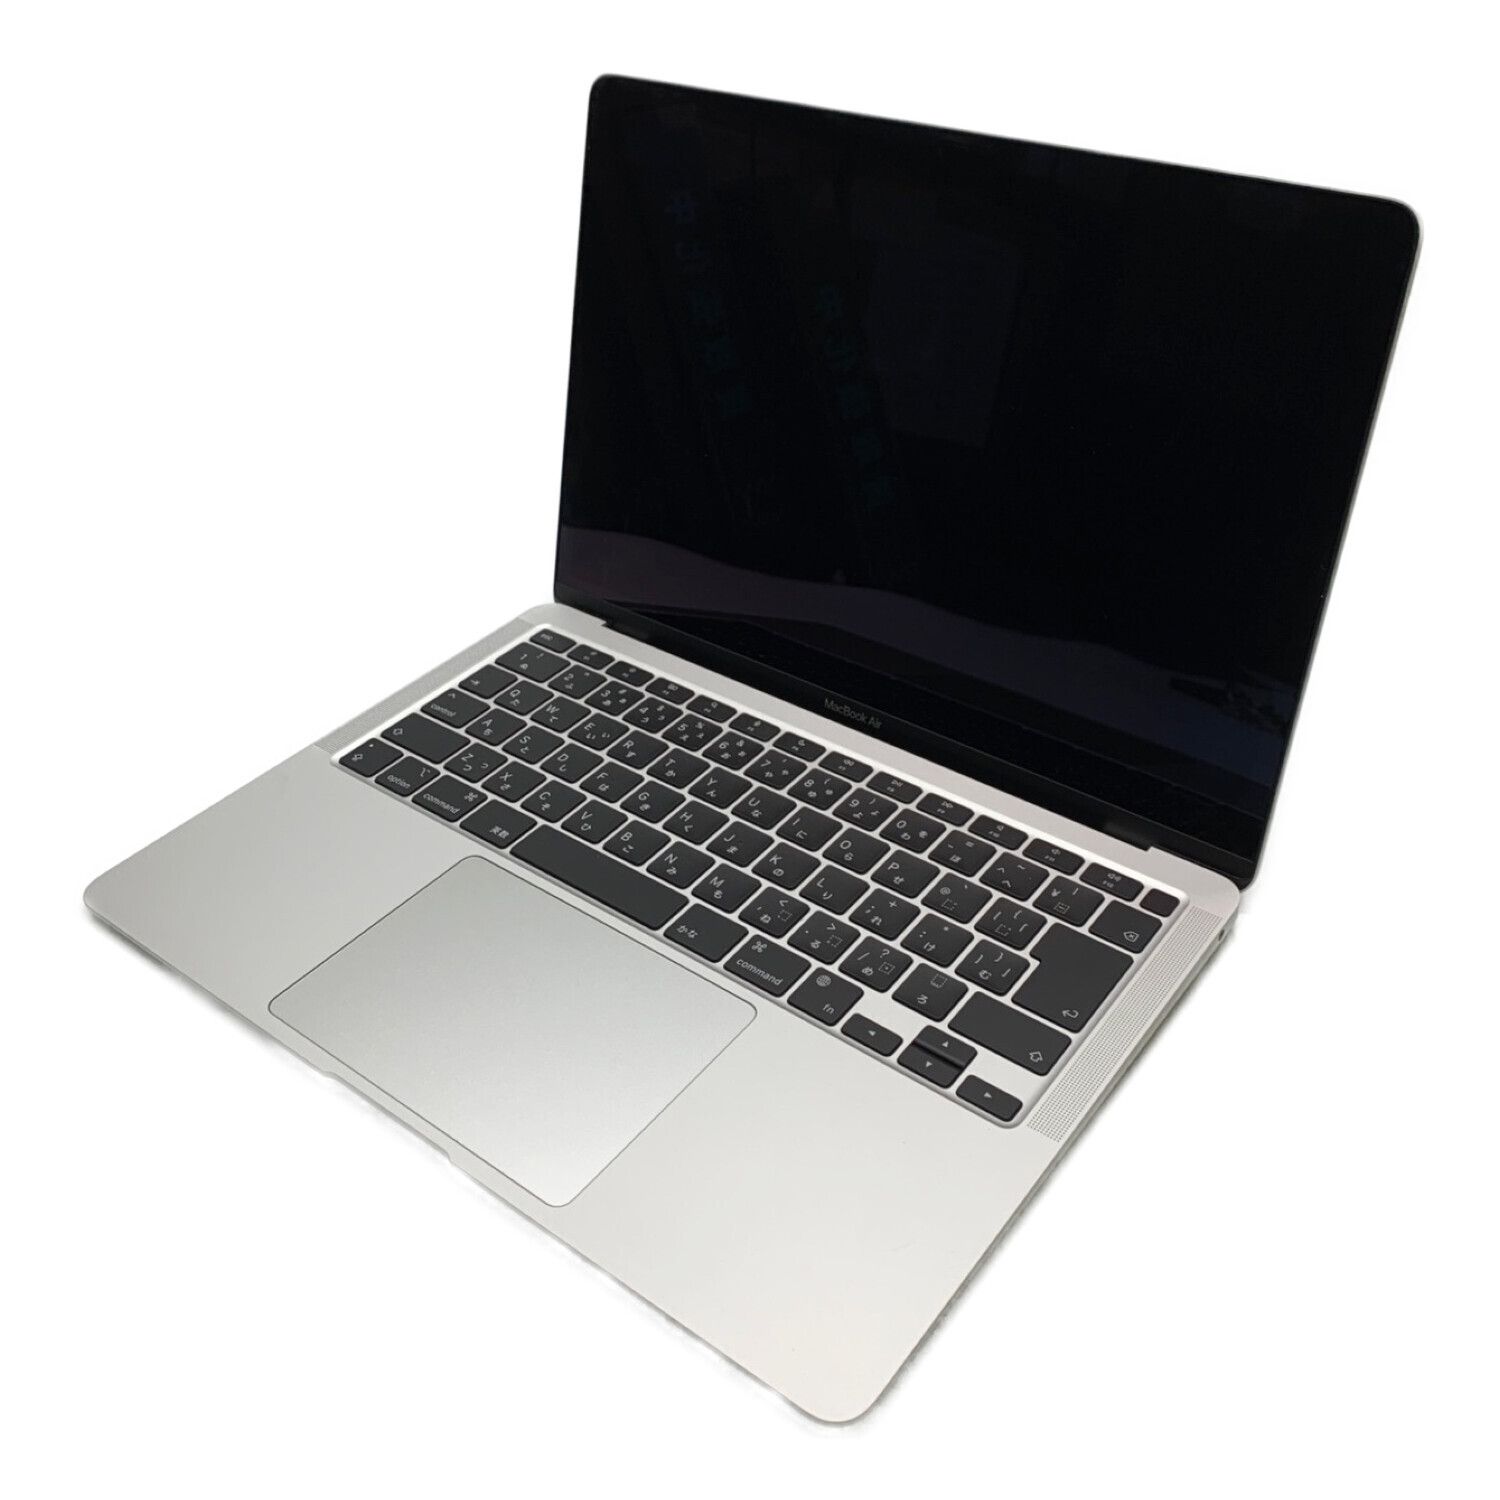 Apple (アップル) MacBook Air M1 2020 MGN93J/A 13インチ Mac